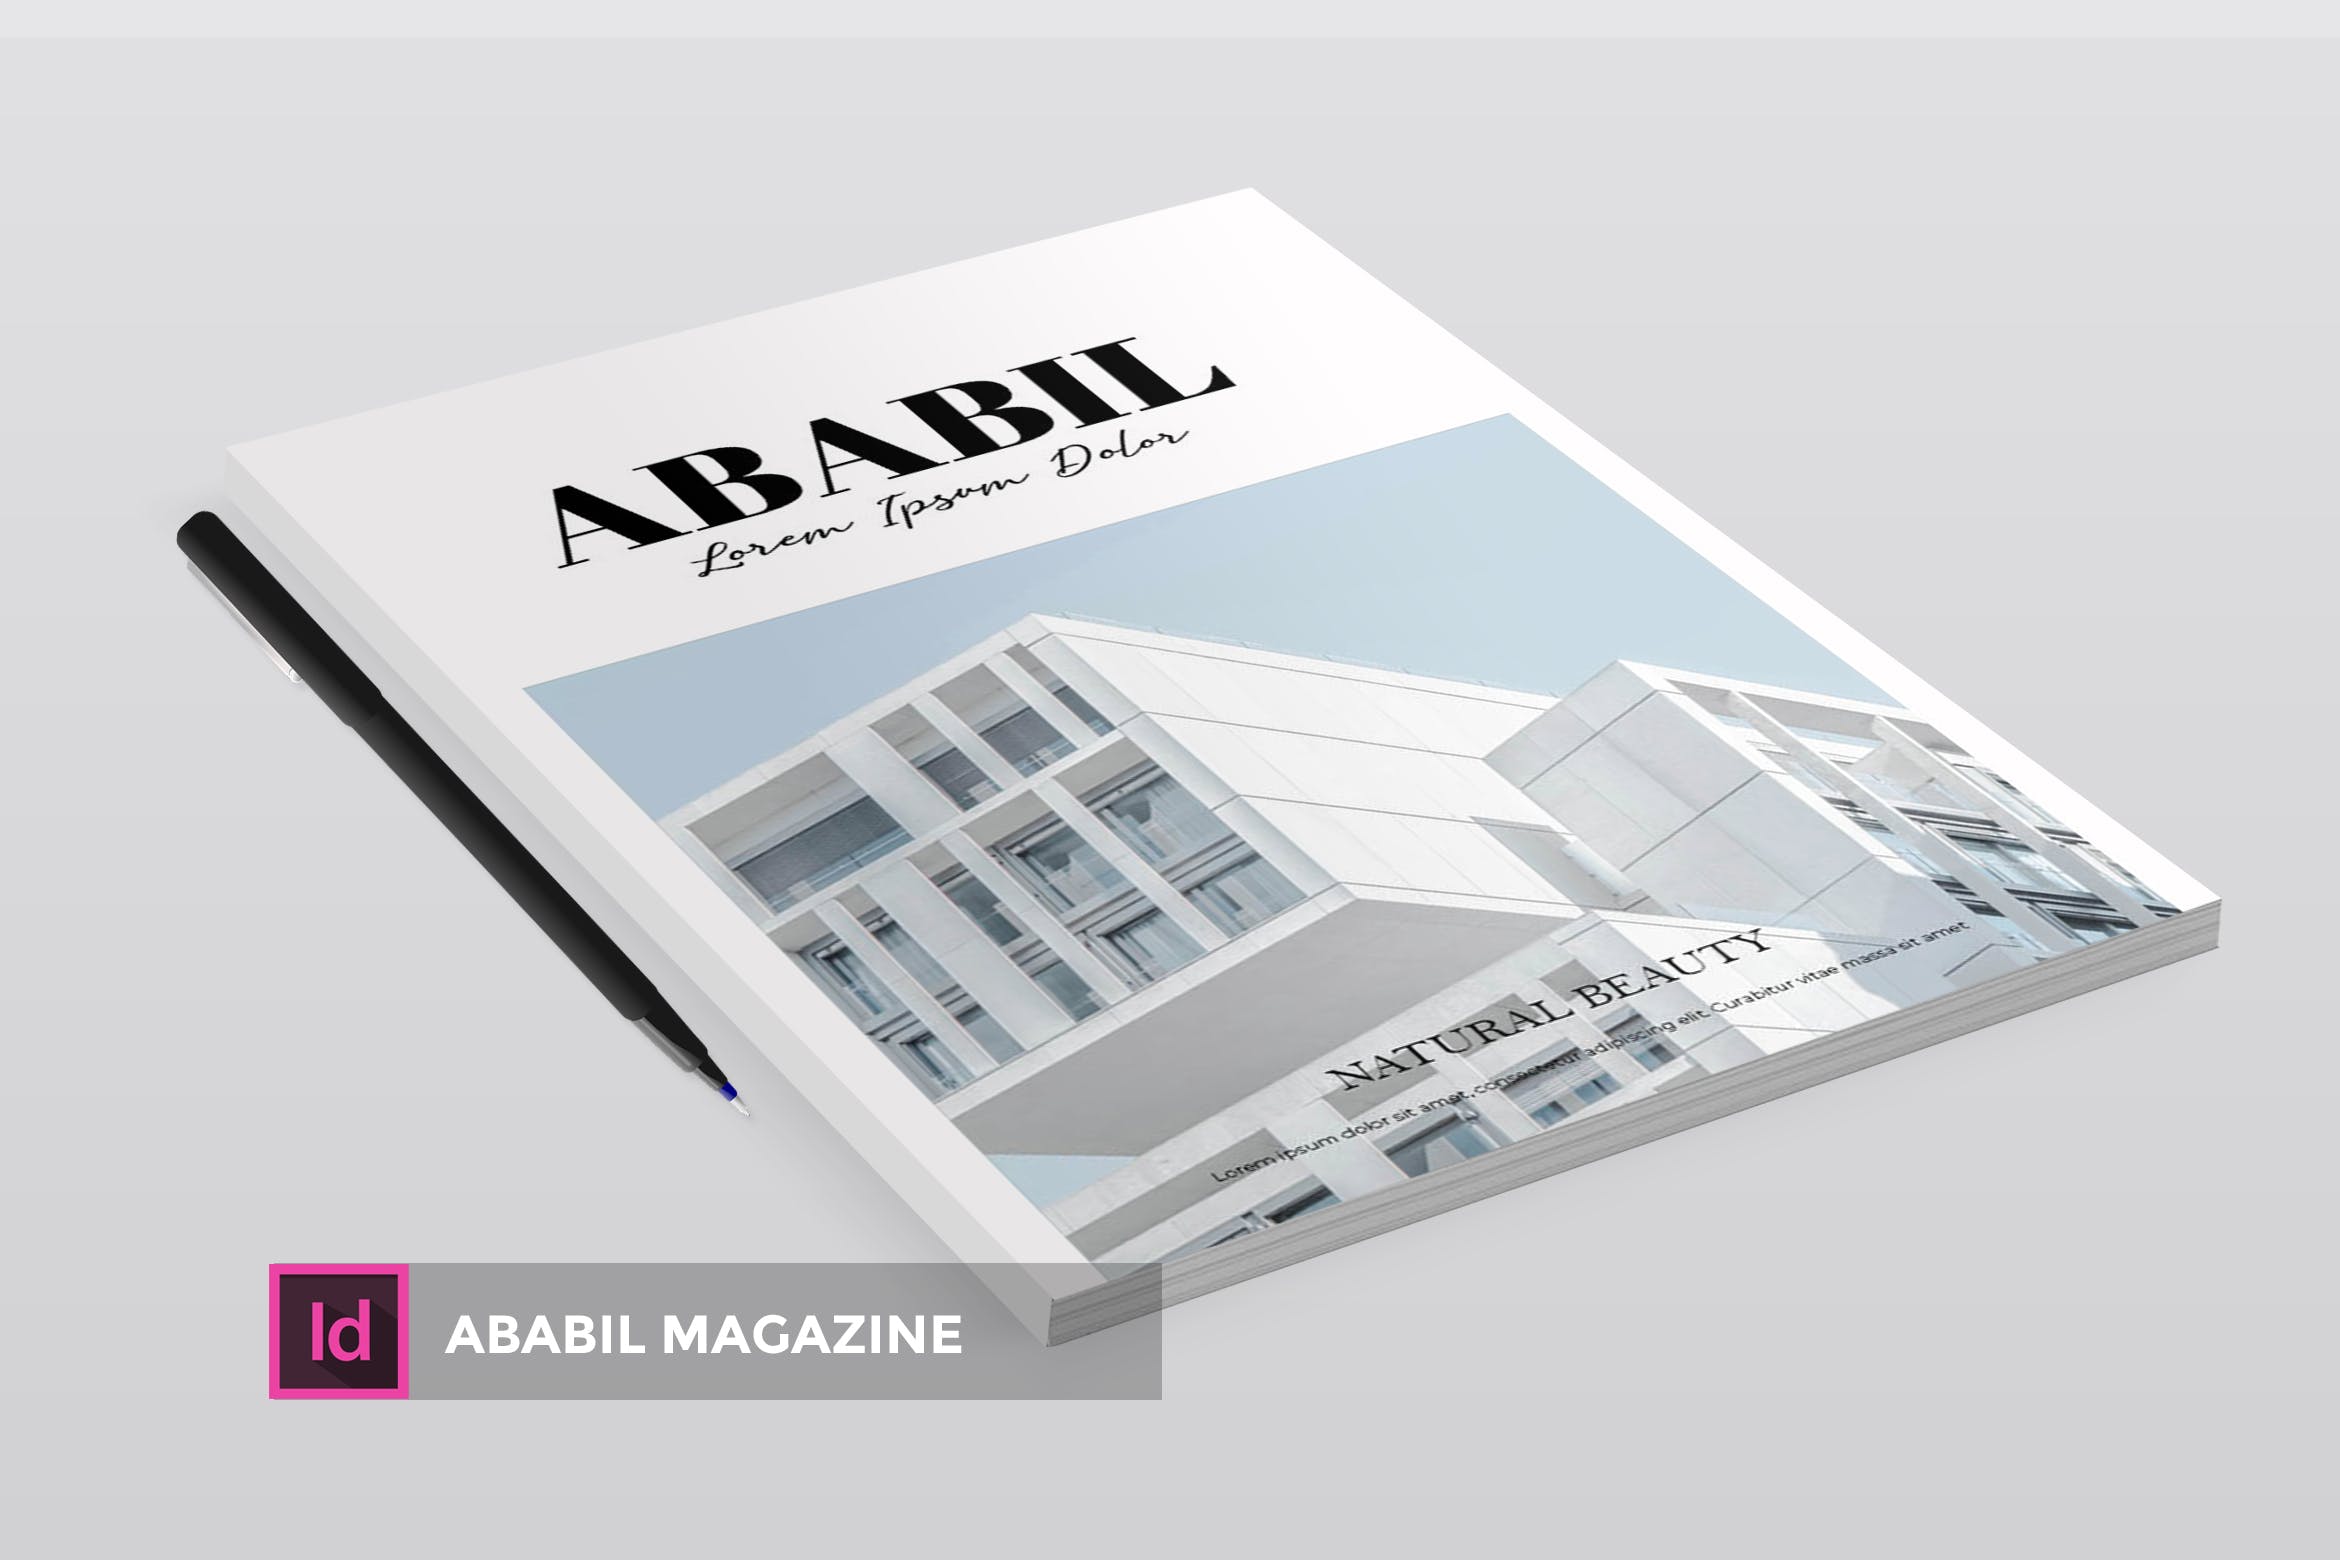 高端建筑/设计/房地产主题16图库精选杂志排版设计INDD模板 ABABIL | Magazine Template插图